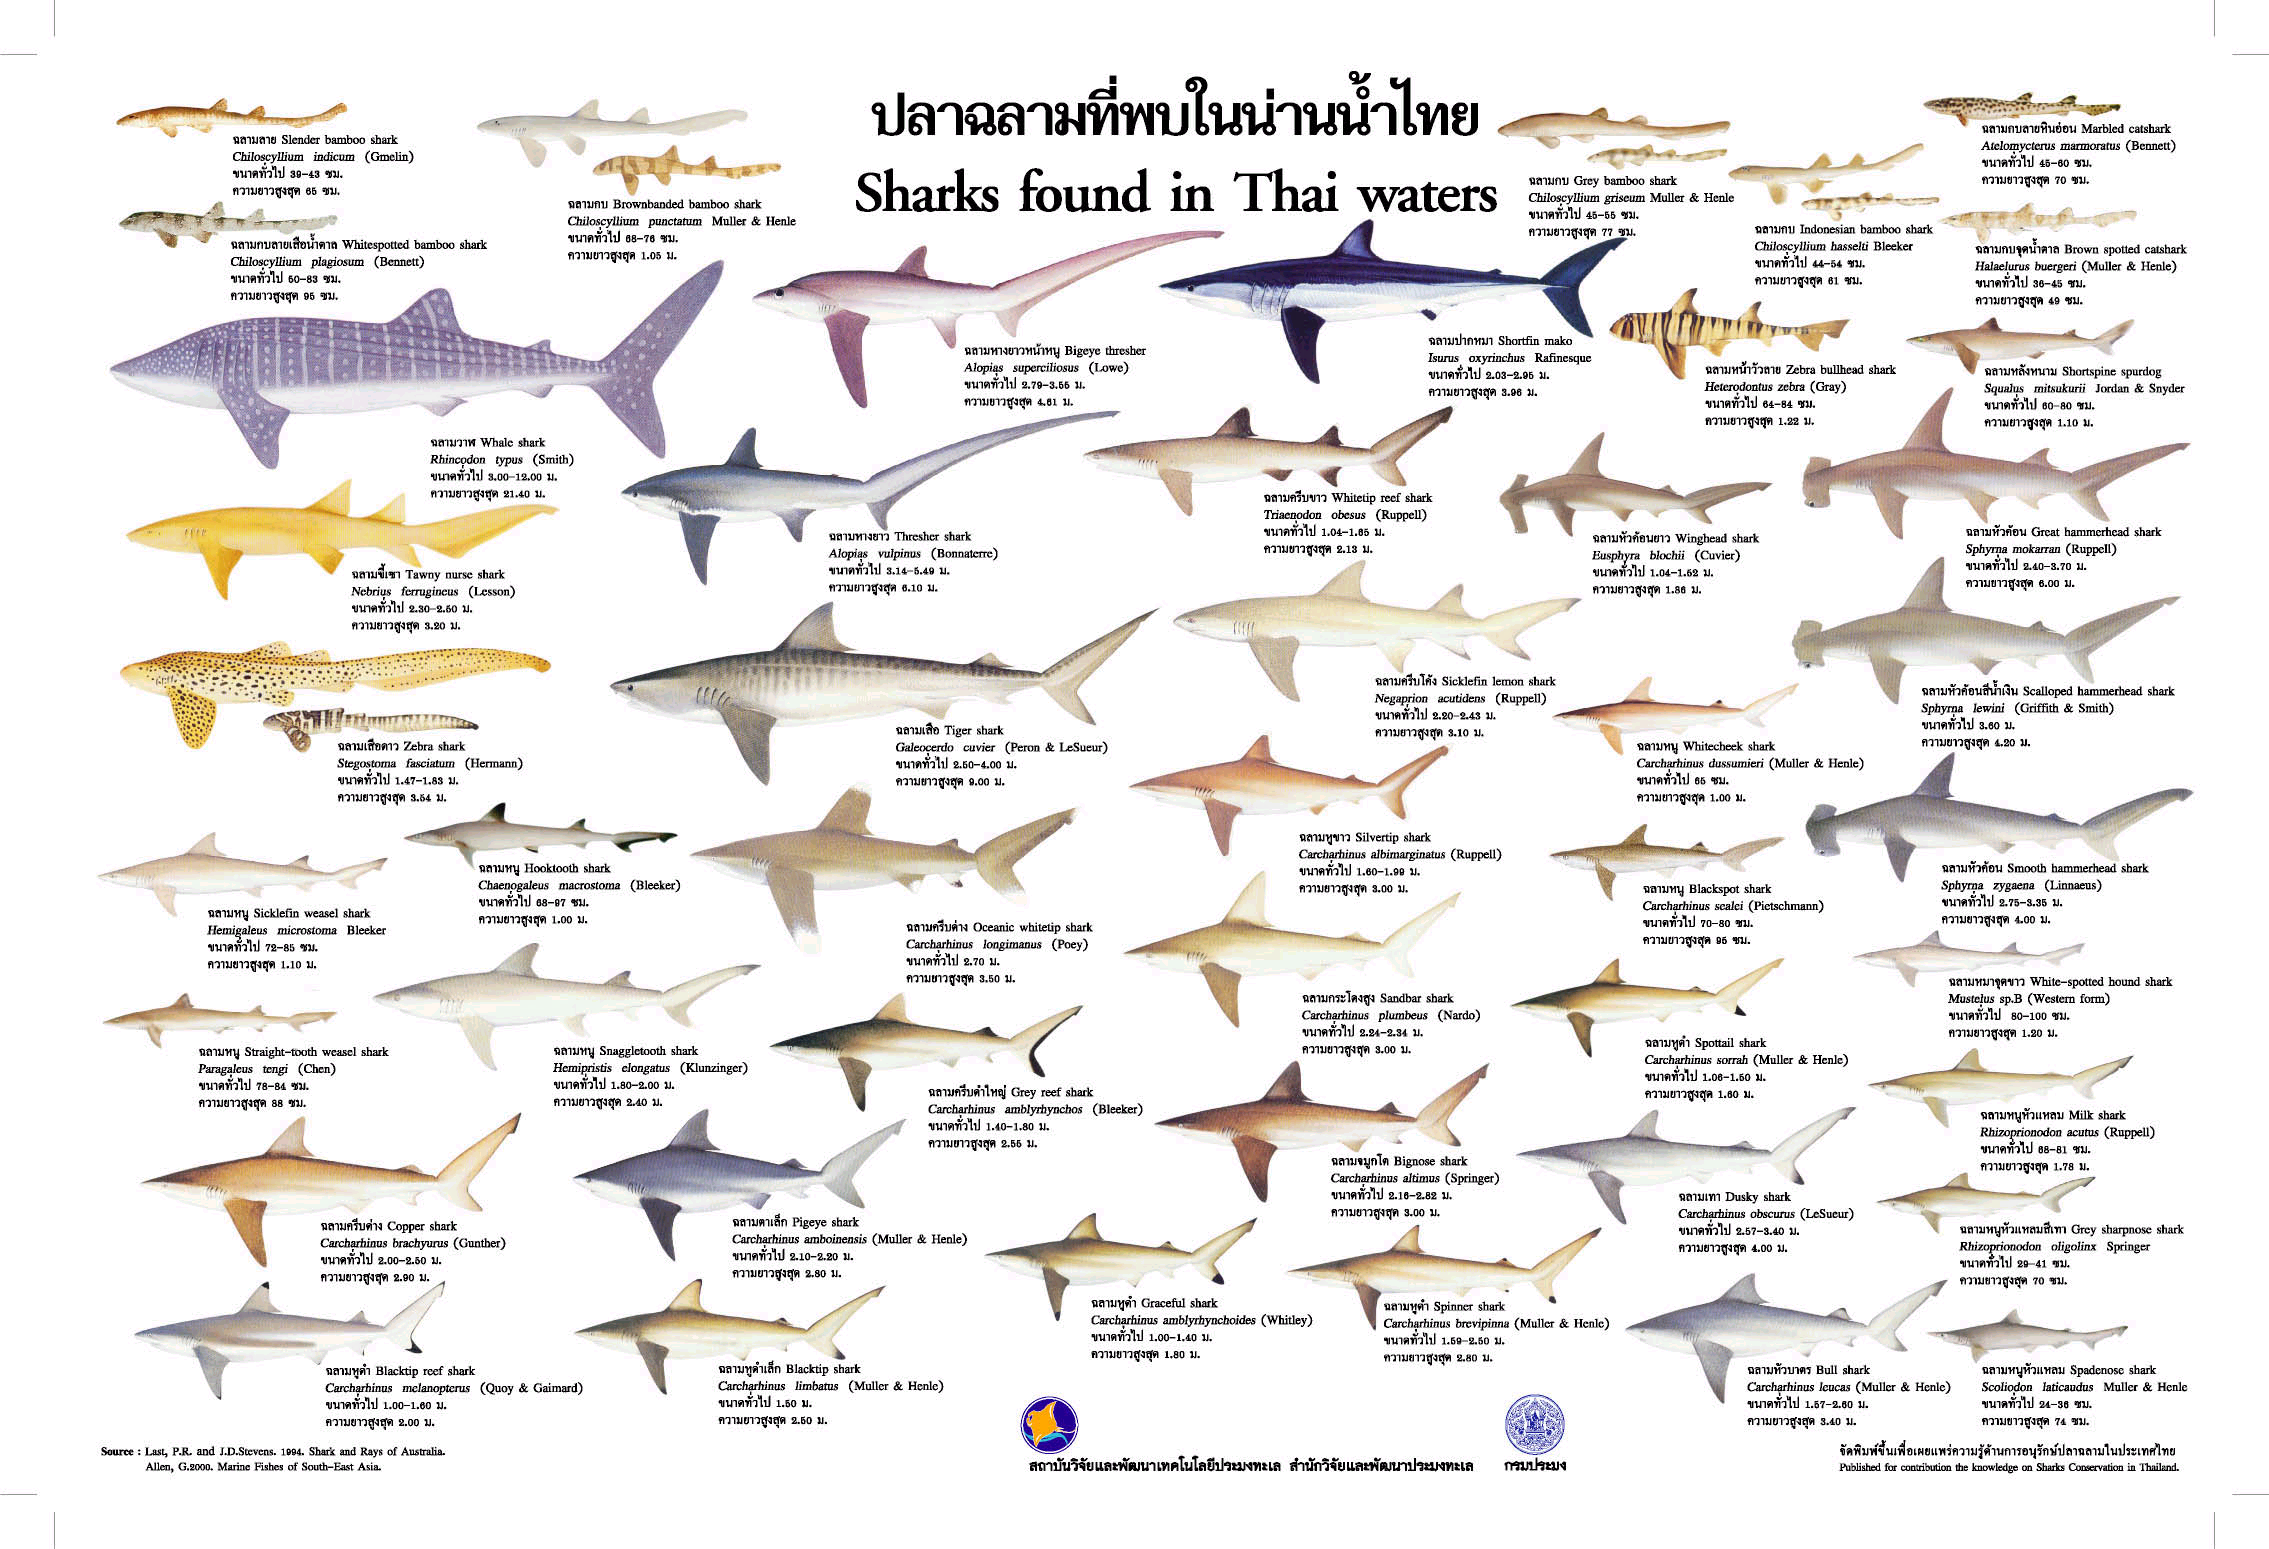 Gulf Fish Identification Chart